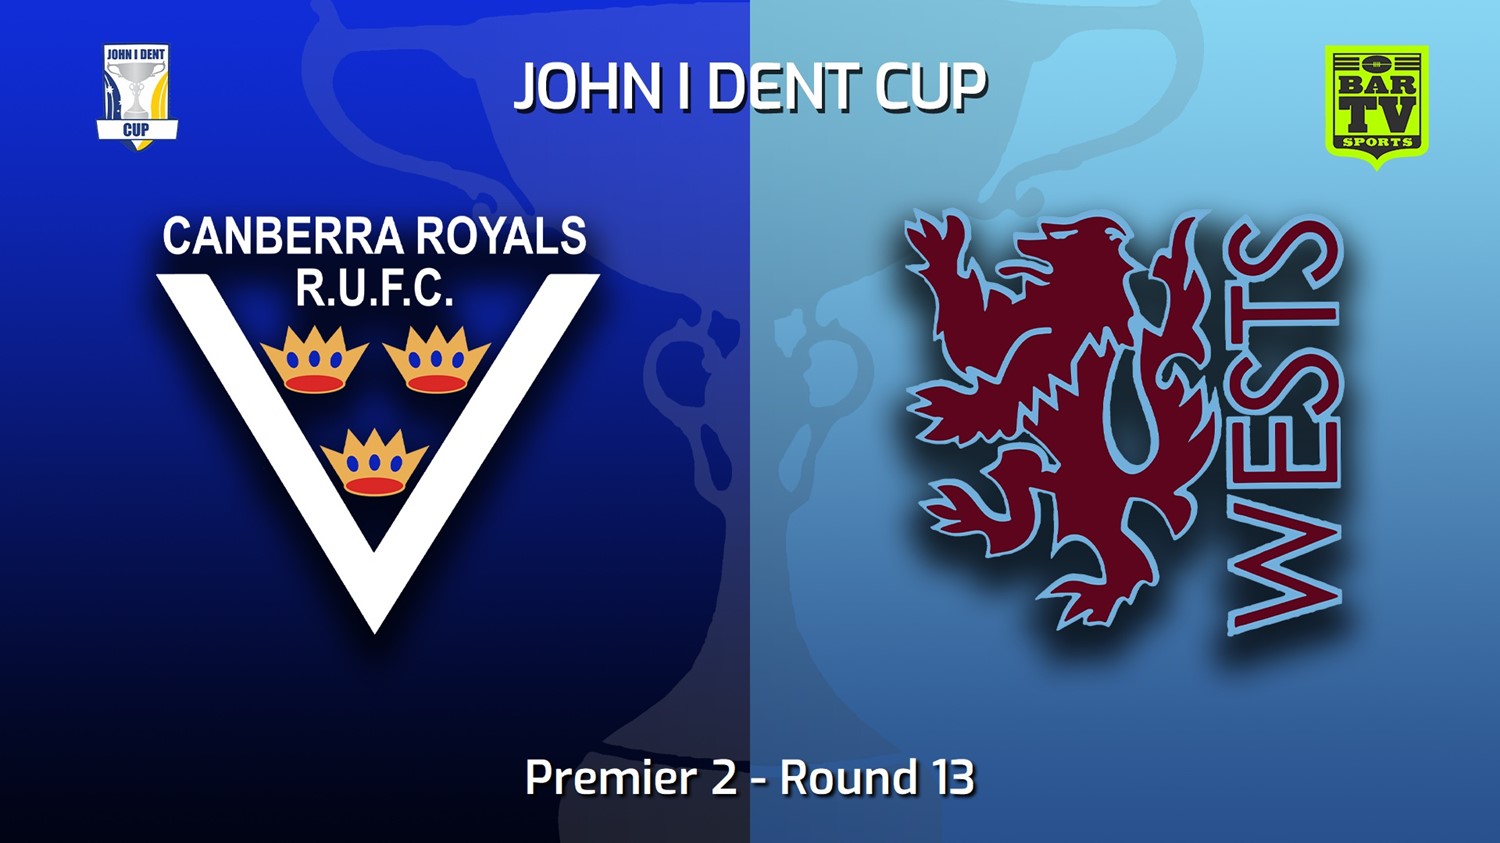 220723-John I Dent (ACT) Round 13 - Premier 2 - Canberra Royals v Wests Lions Slate Image